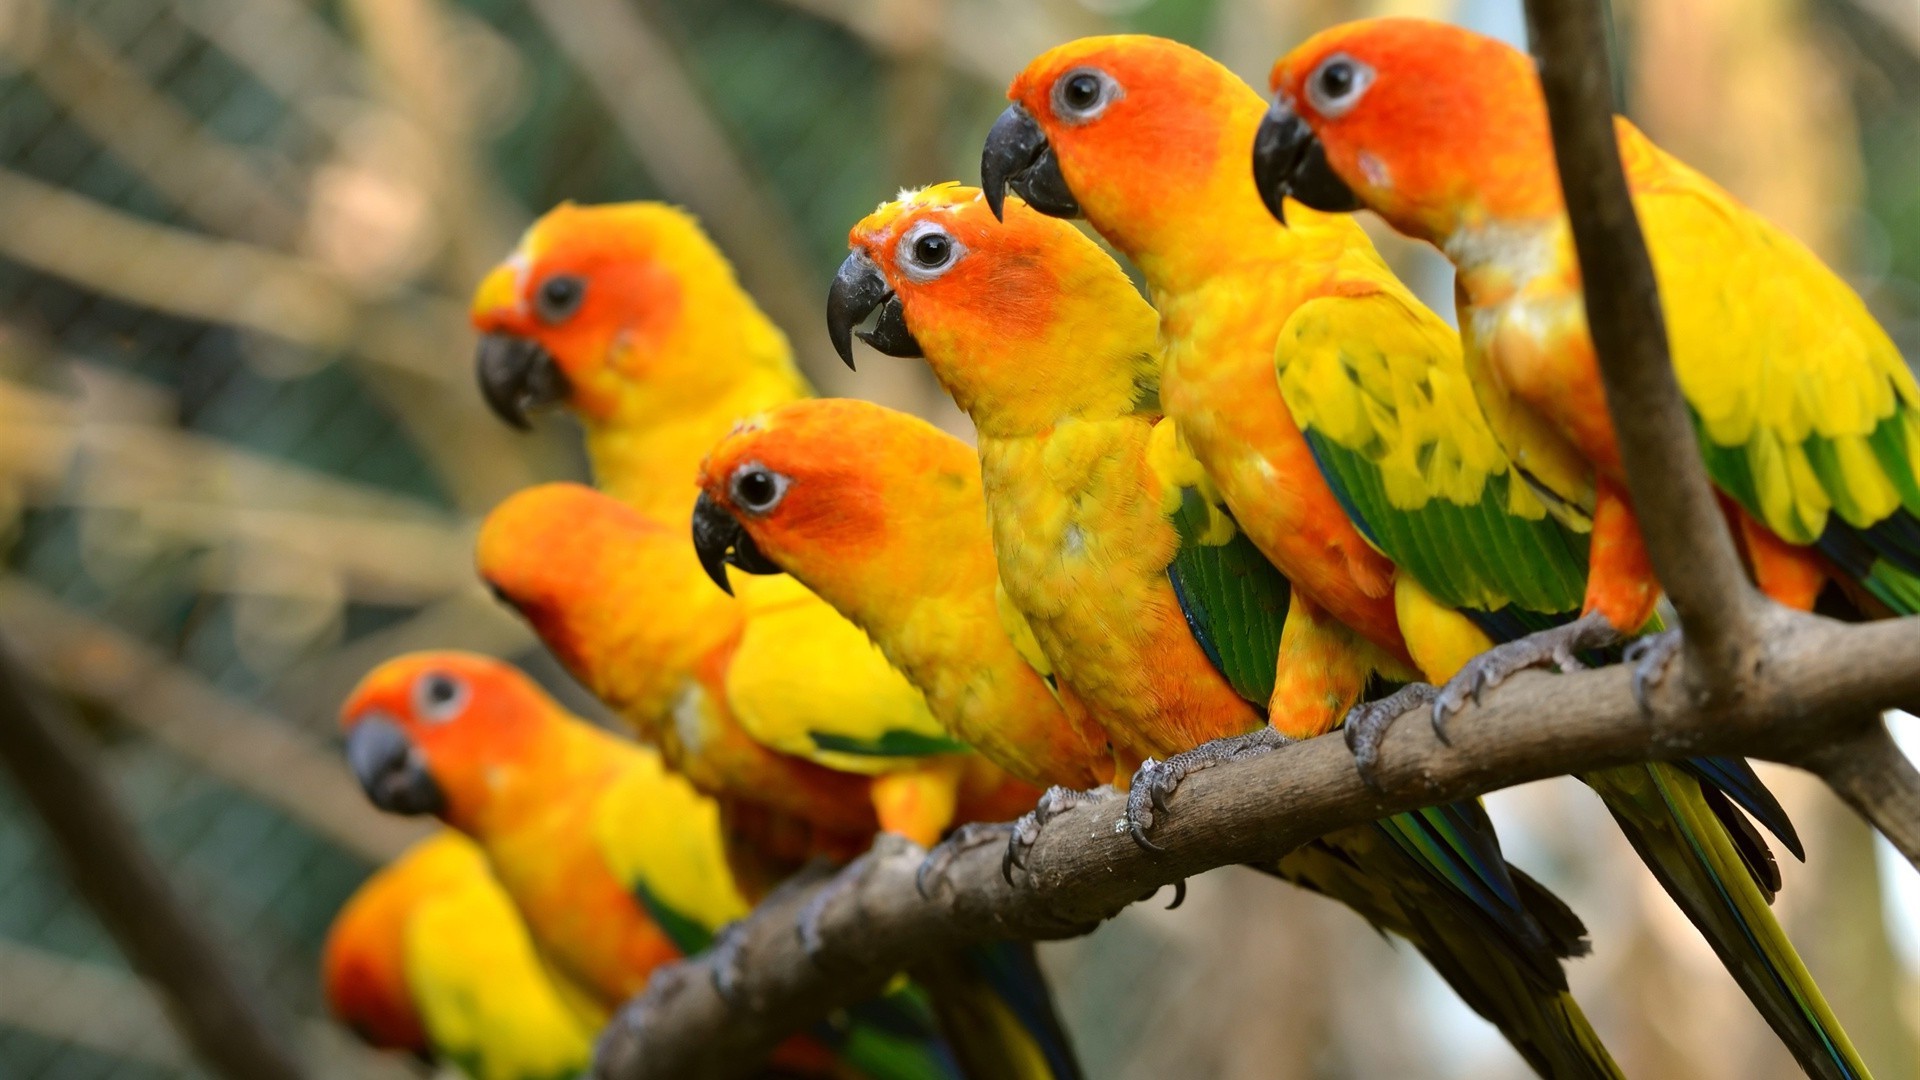 животные попугай птица ара тропический зоопарк попугай природа дикой природы экзотические клюв авиан